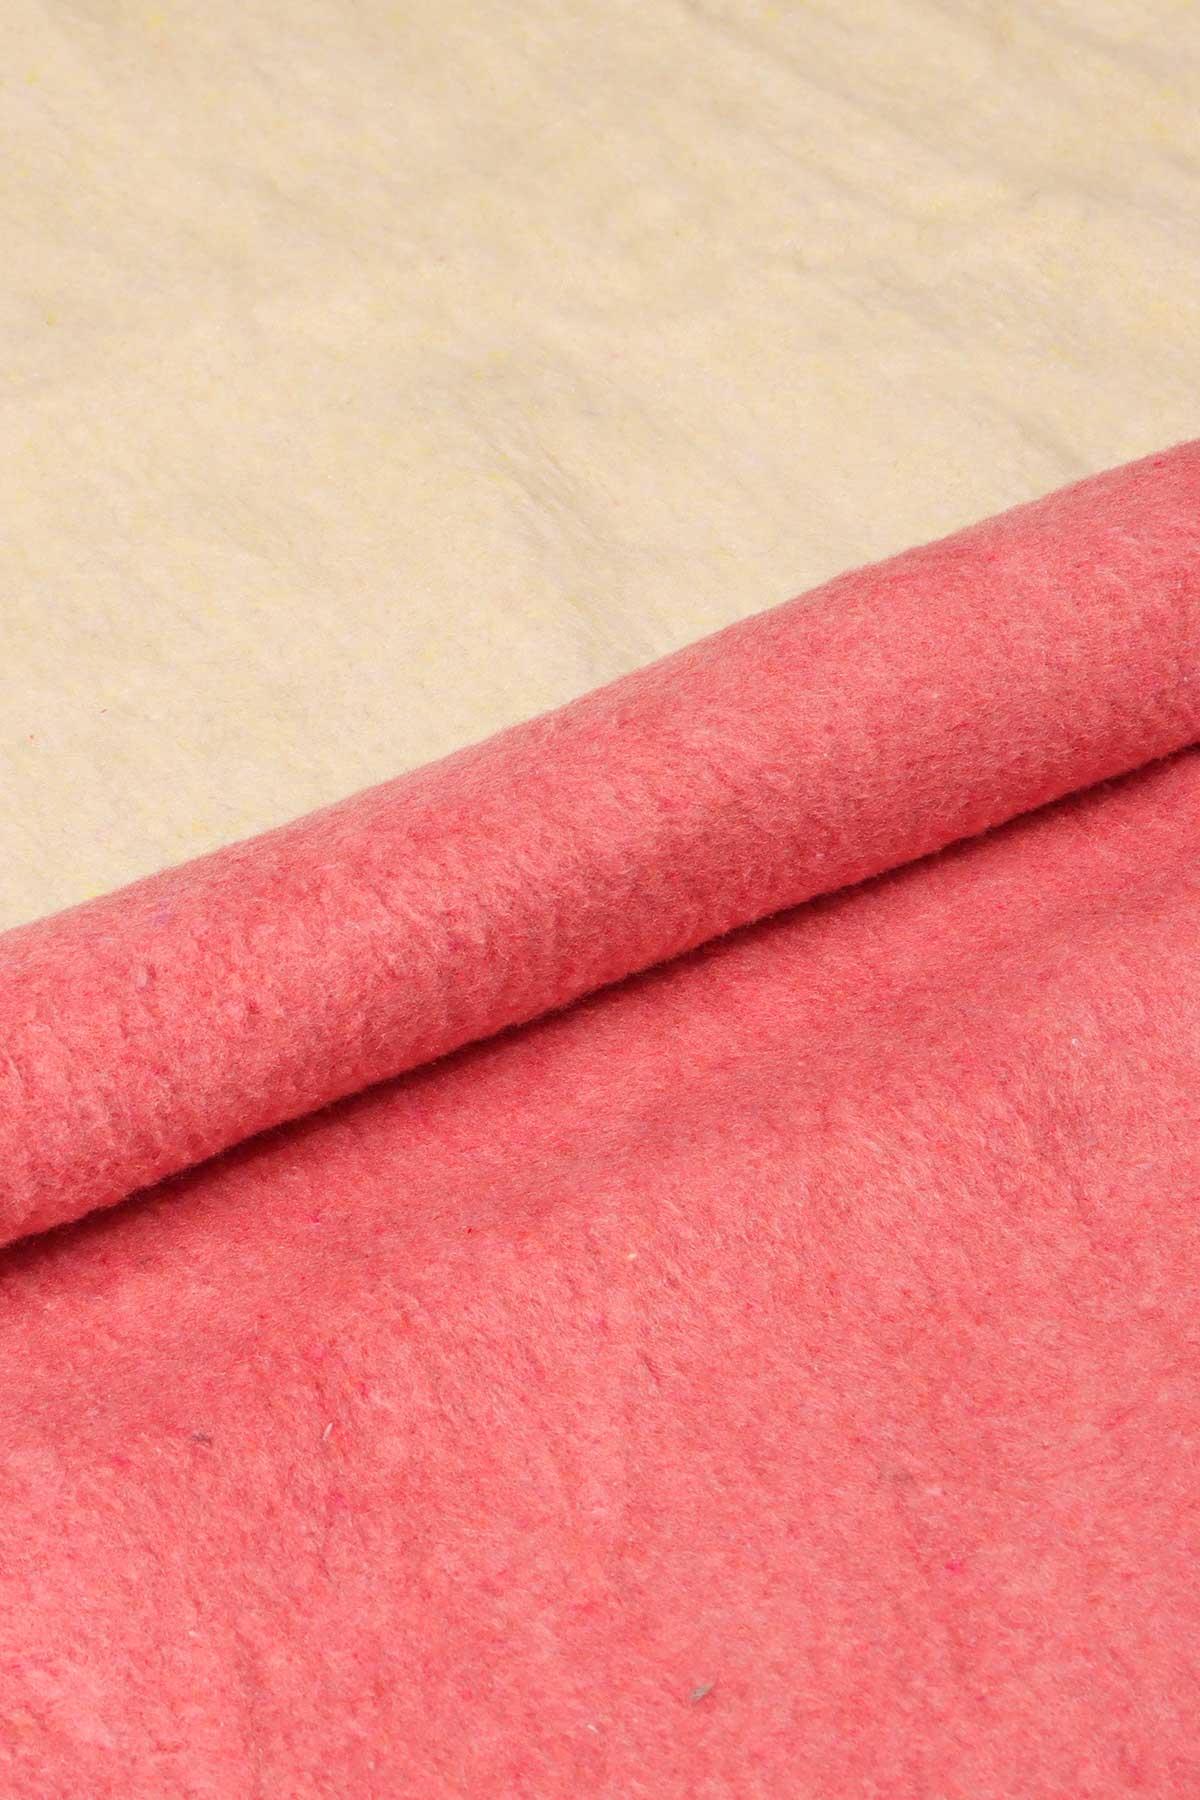 yesilhome cift kisilik pamuk battaniye cift tarafli battaniye pembe krem 120022.jpg